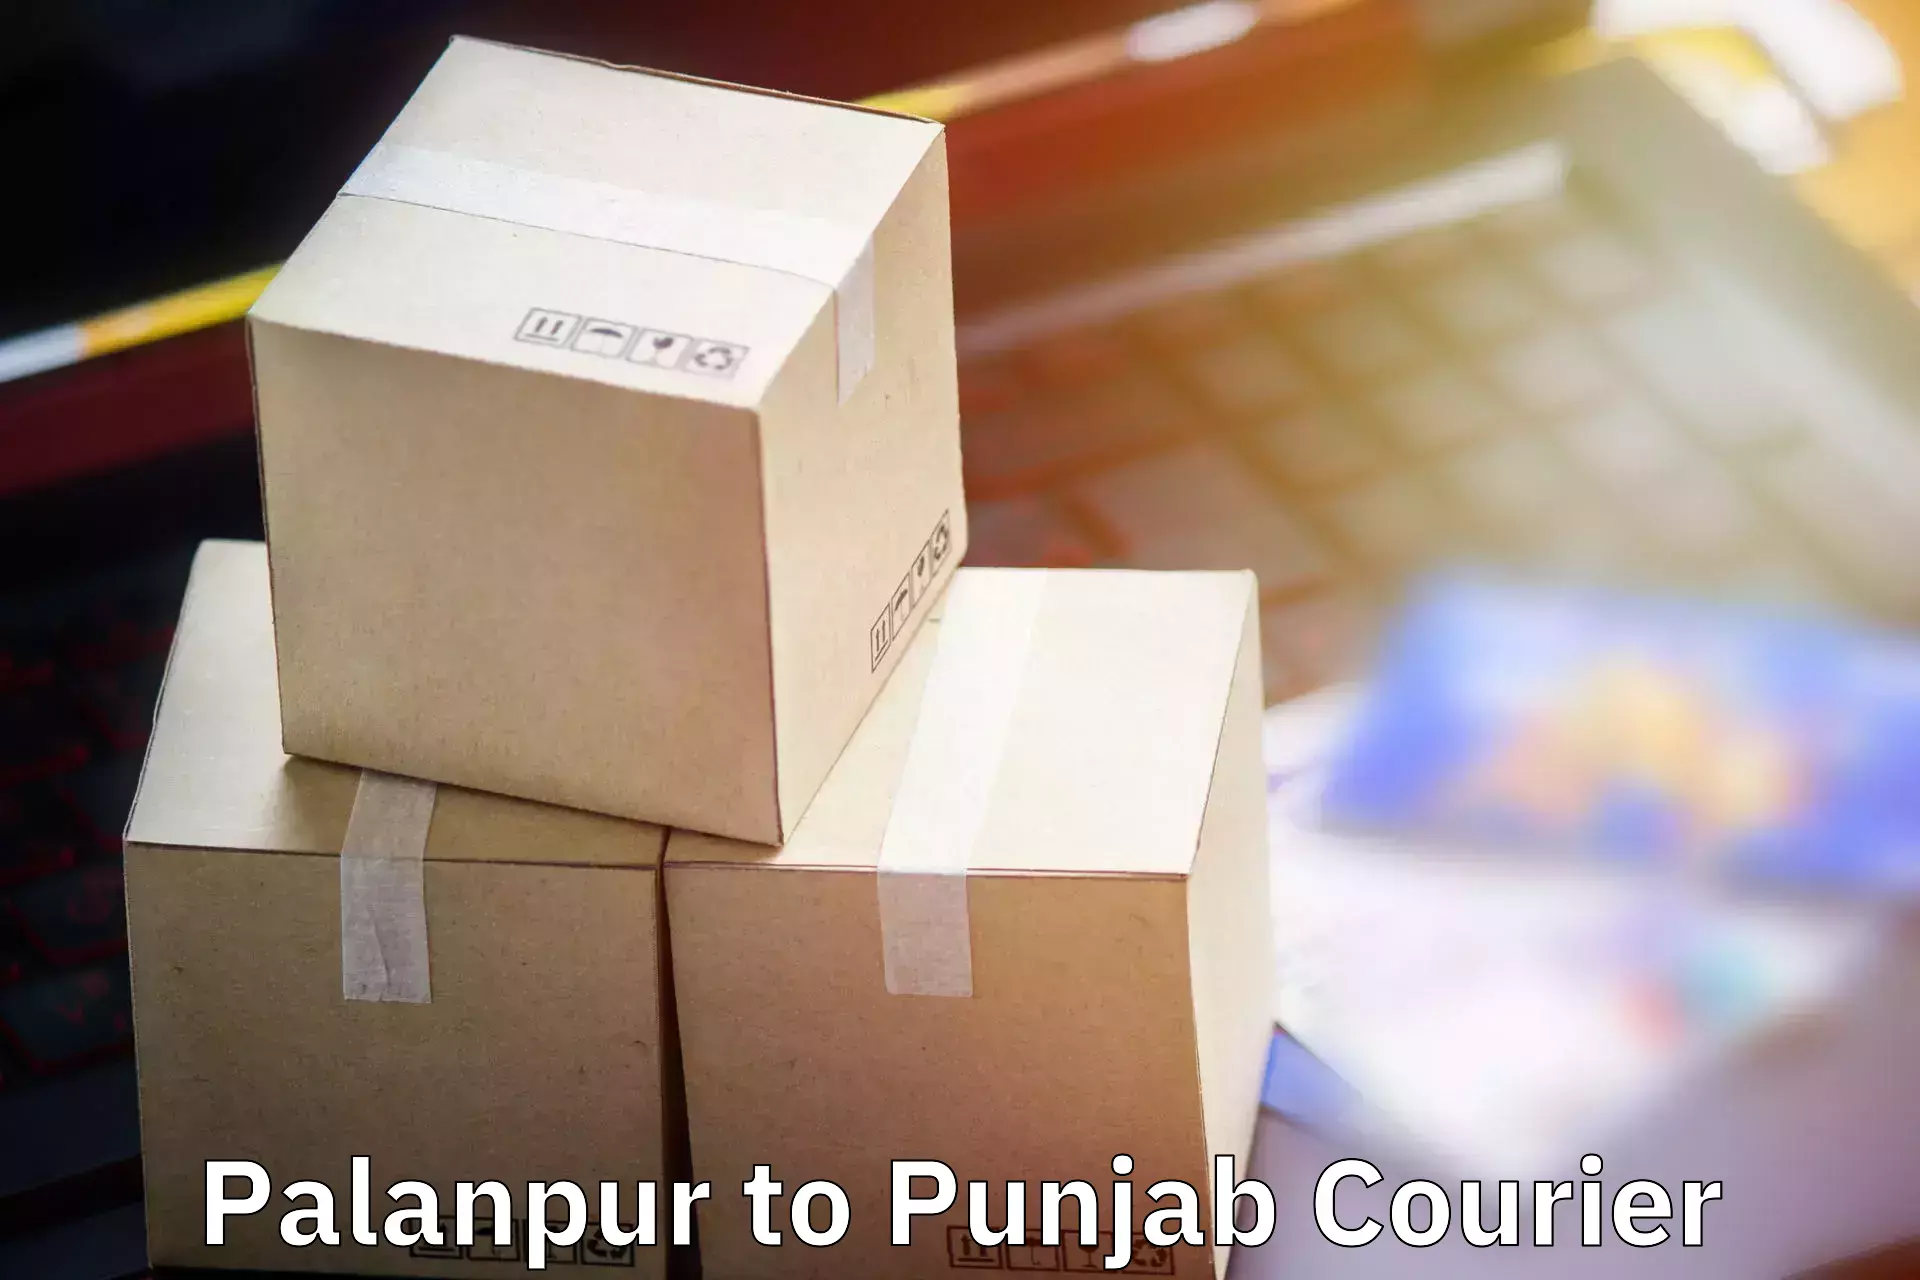 Baggage shipping quotes Palanpur to Pathankot